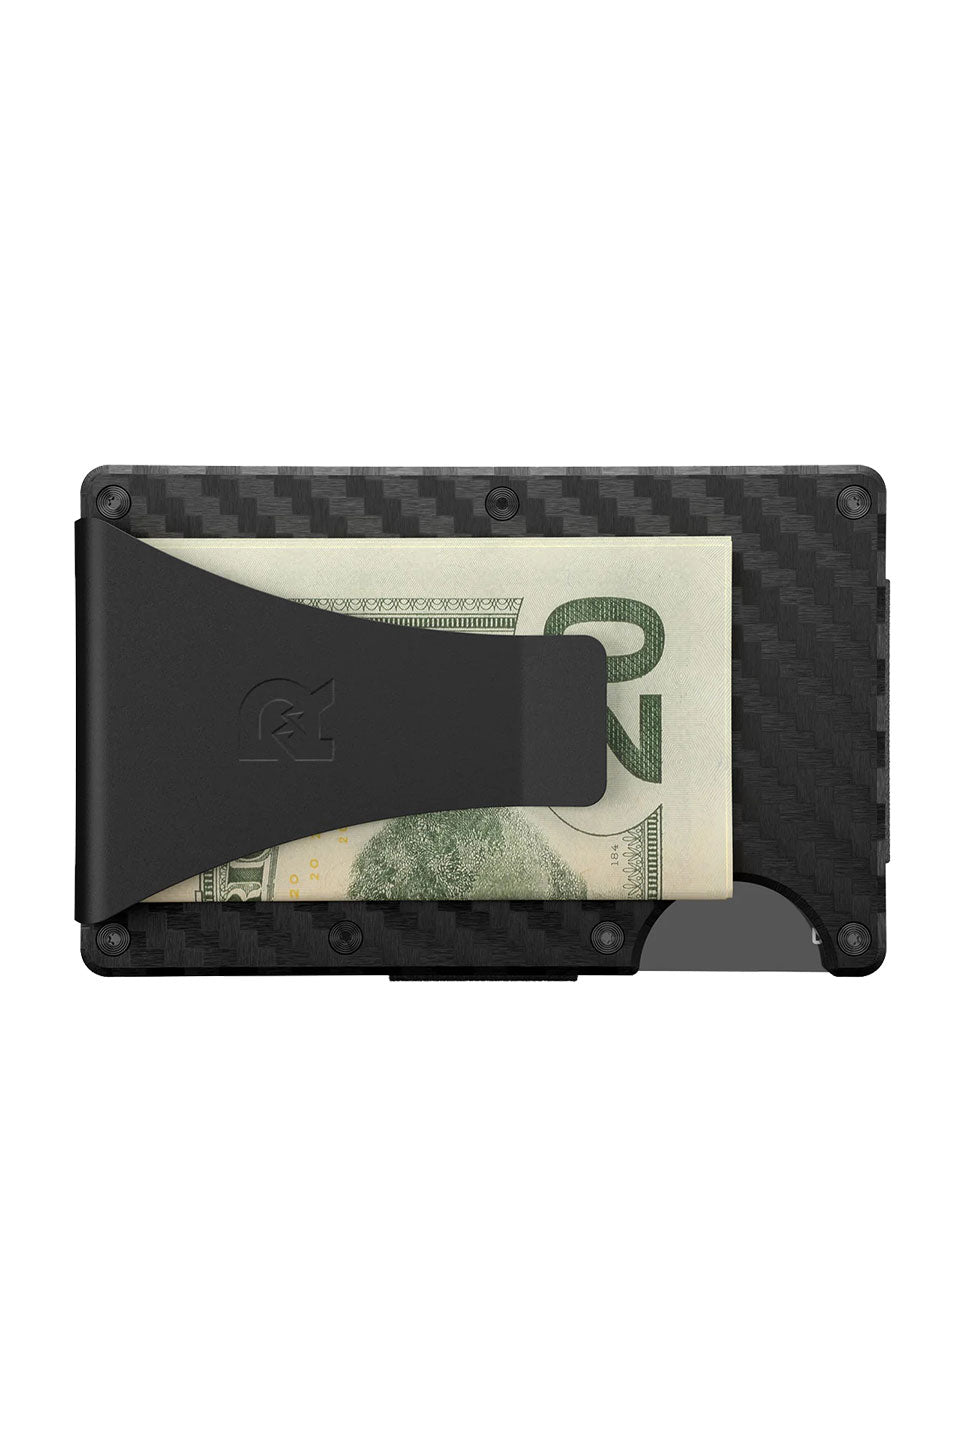 Ridge Wallet - Carbon Fiber - Money Clip - 3K Weave